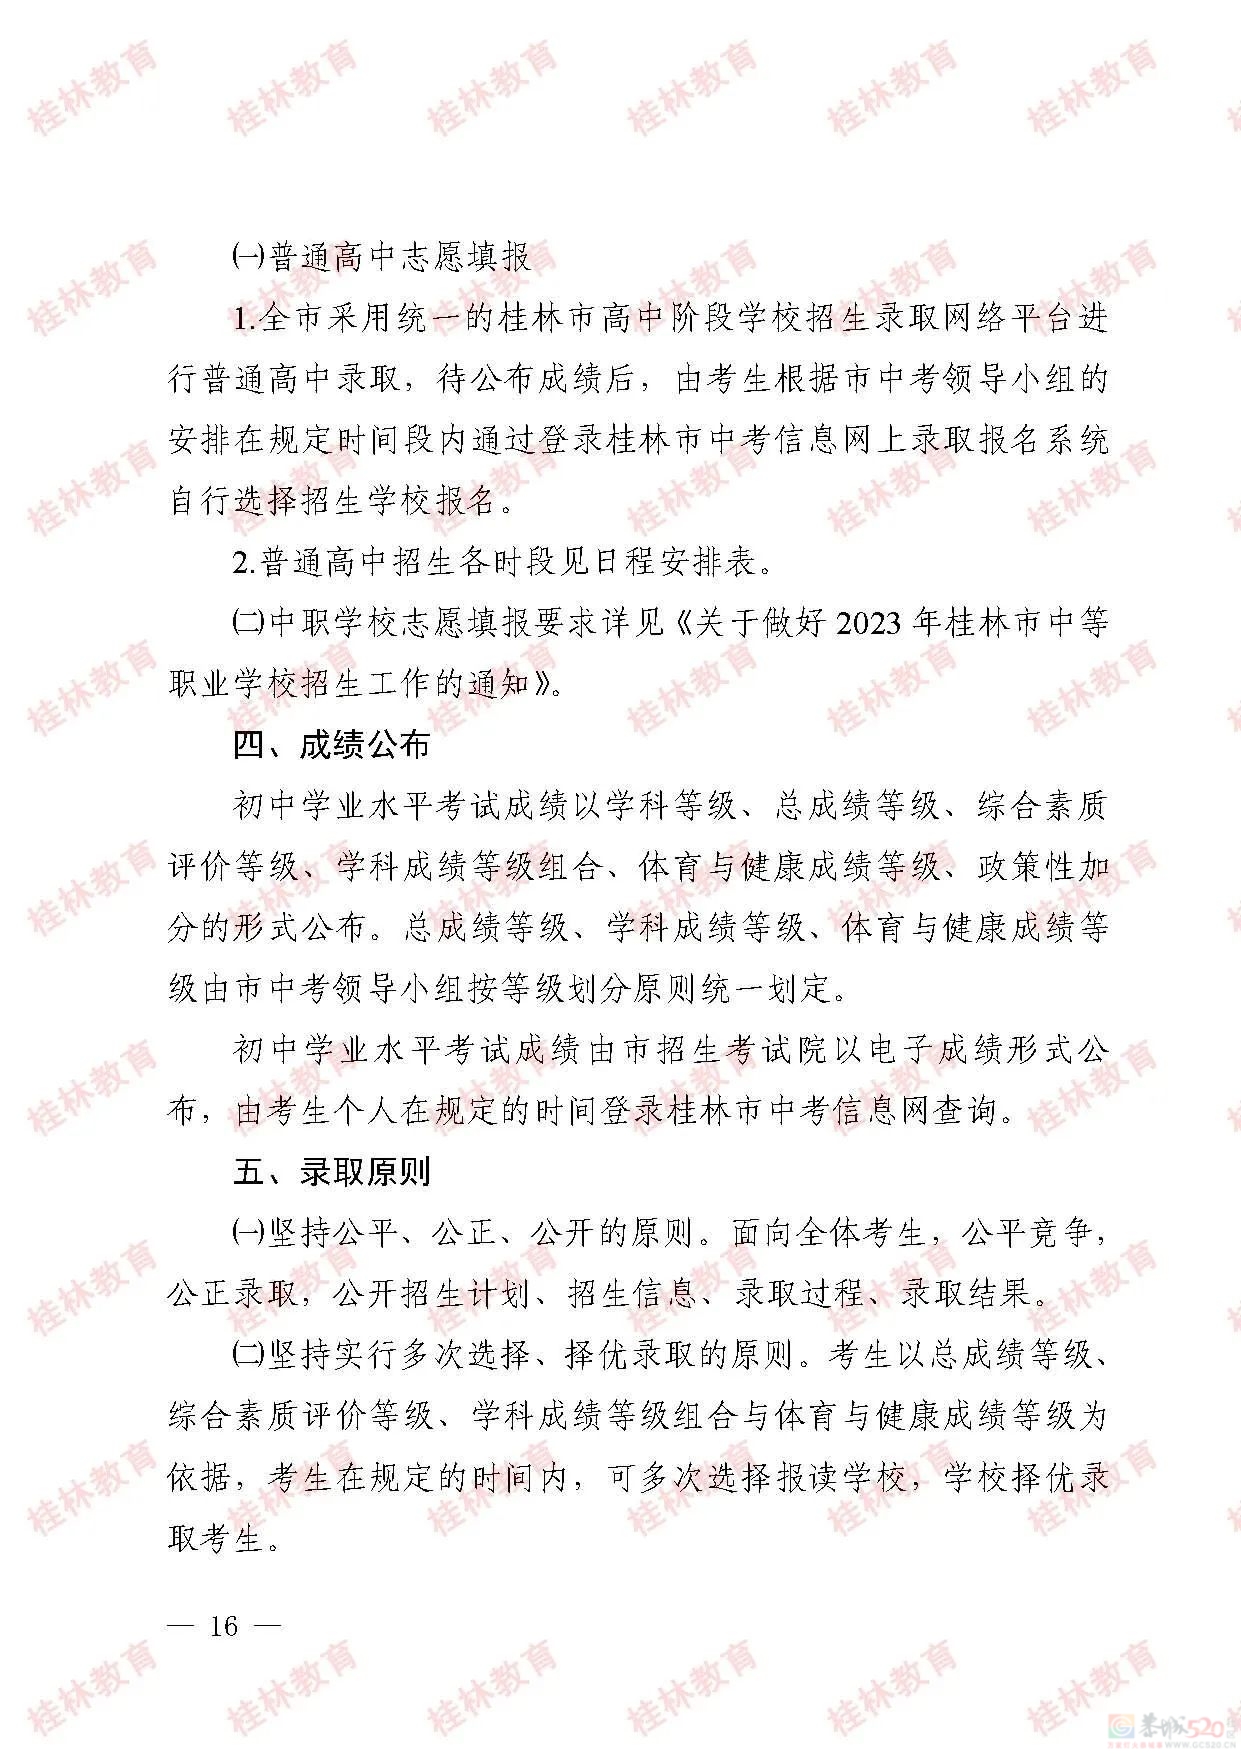 桂林市2023年初中学业考试与高中阶段学校招生工作方案发布19 / 作者:论坛小编01 / 帖子ID:307086